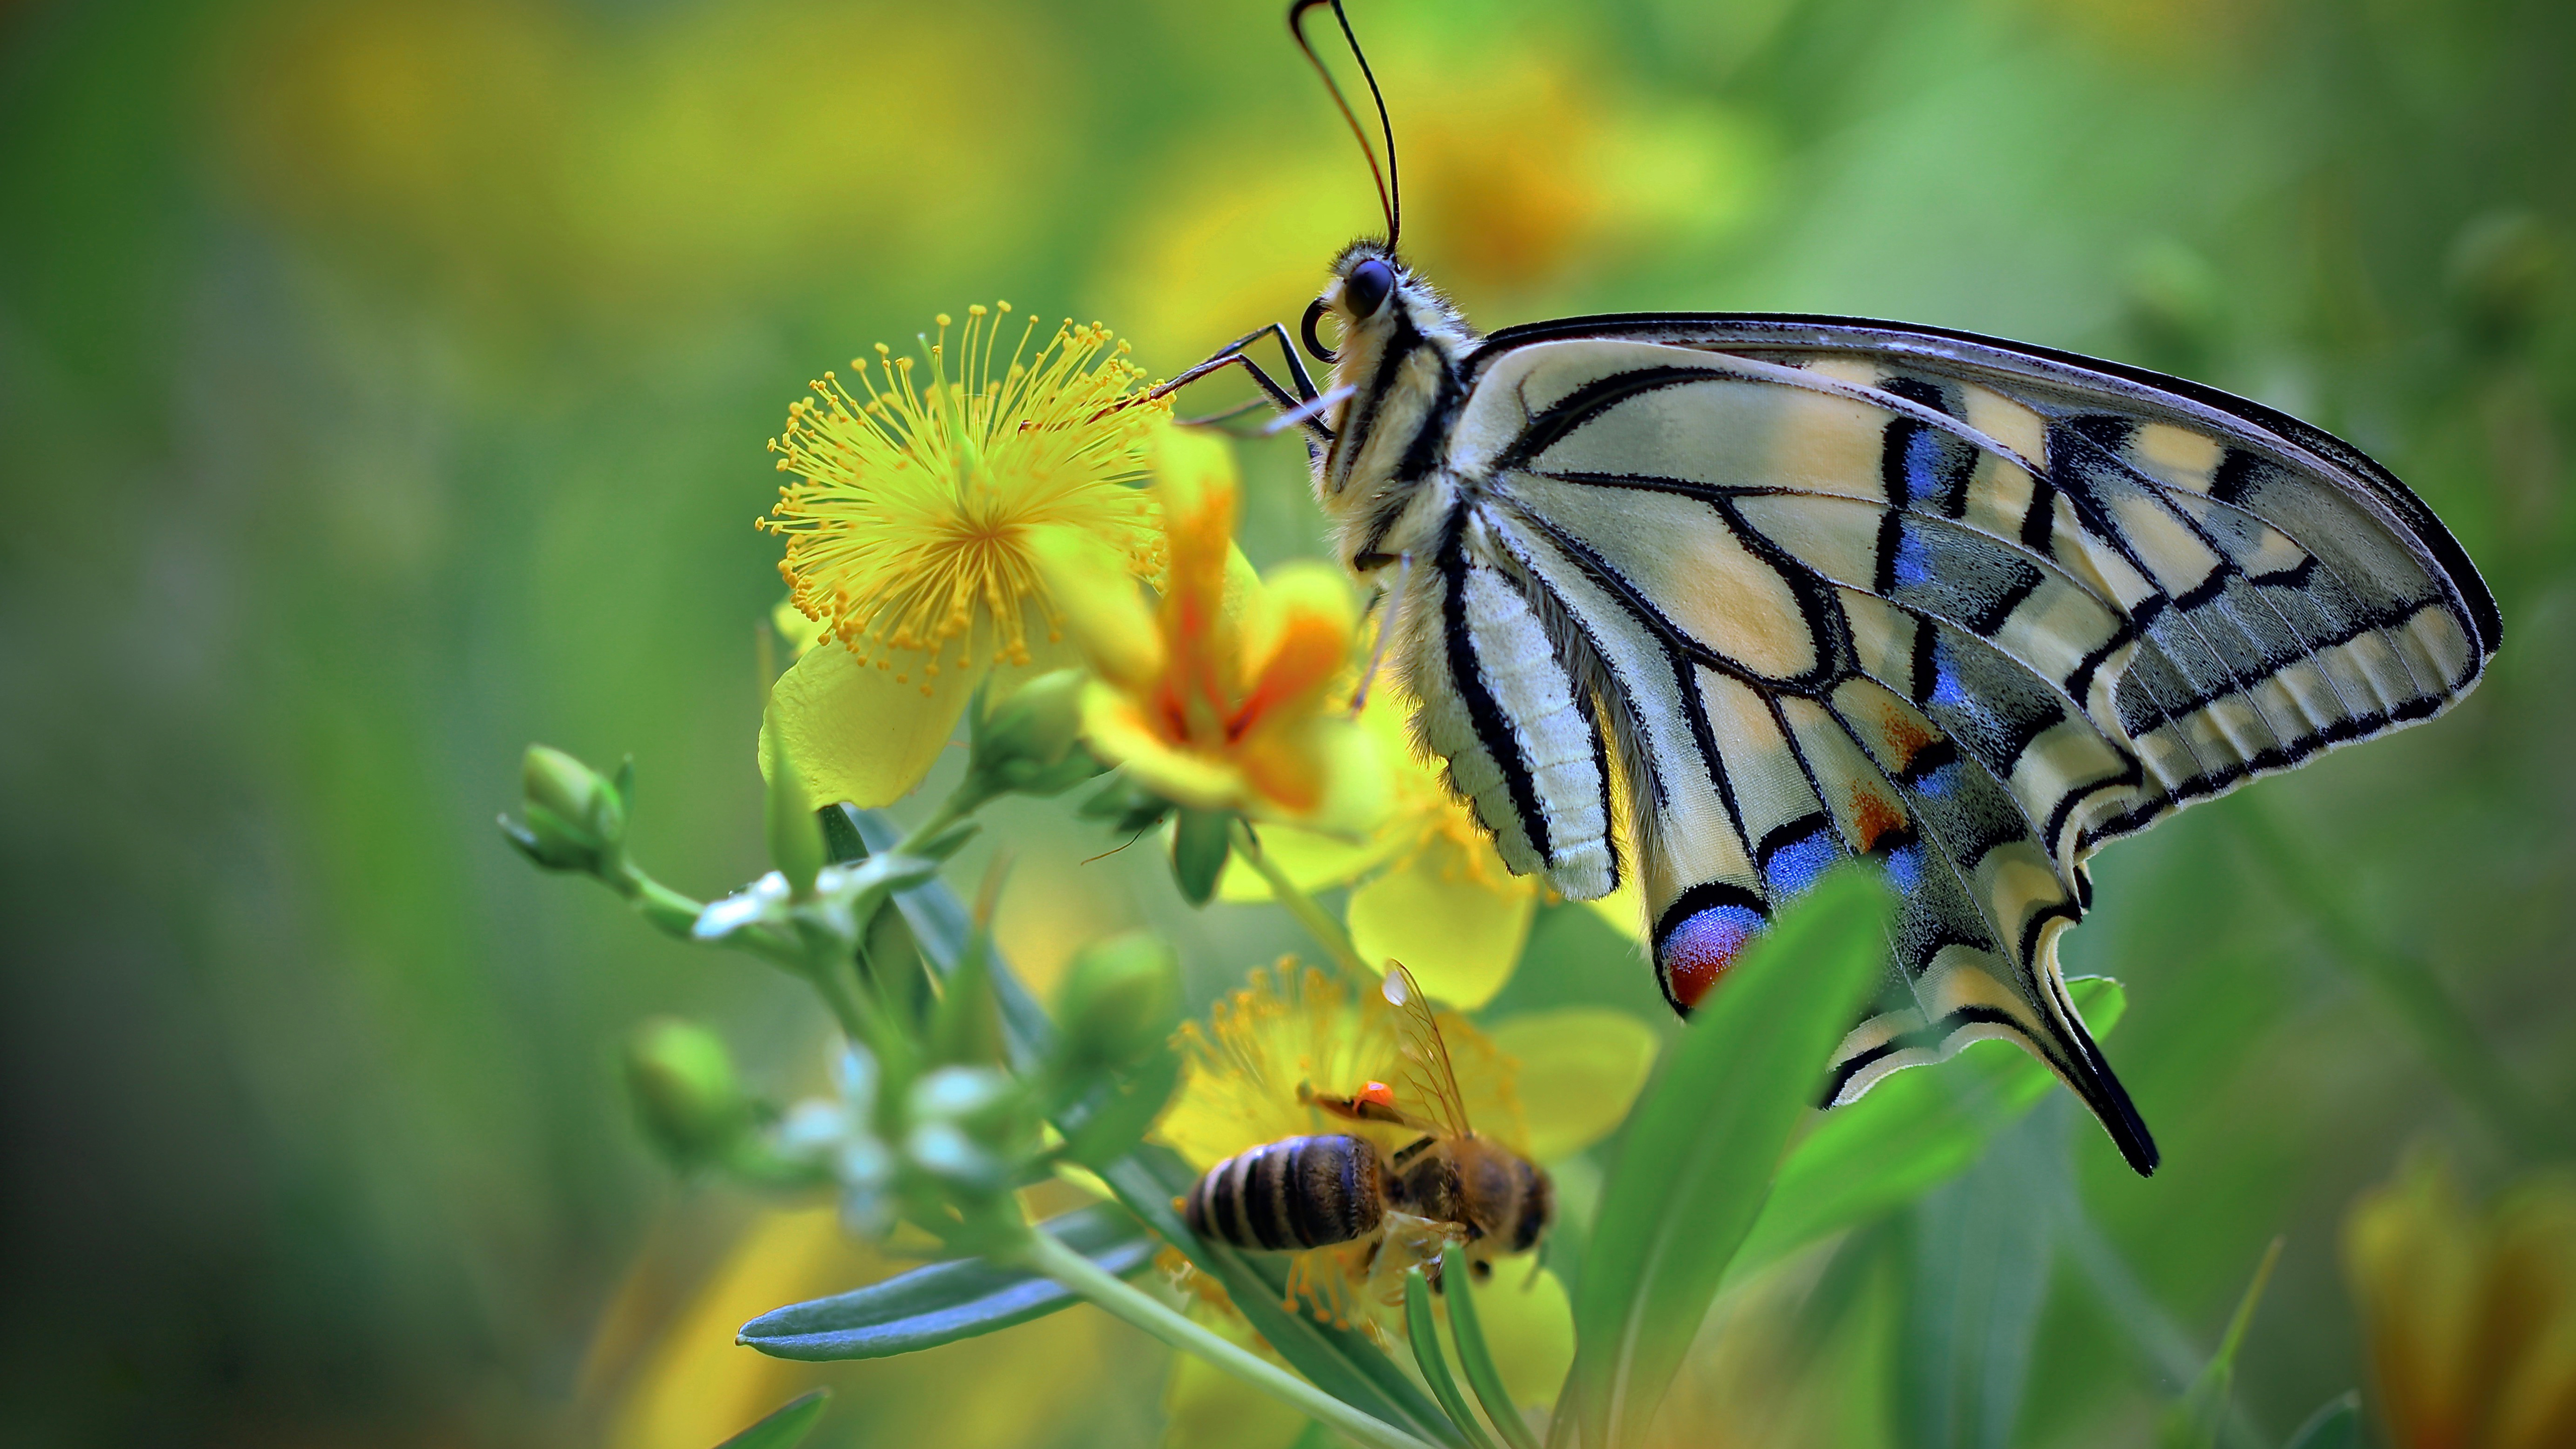 Beautiful Colorful Butterfly On Yellow Flower In Blur Green Wallpaper K K HD Butterfly